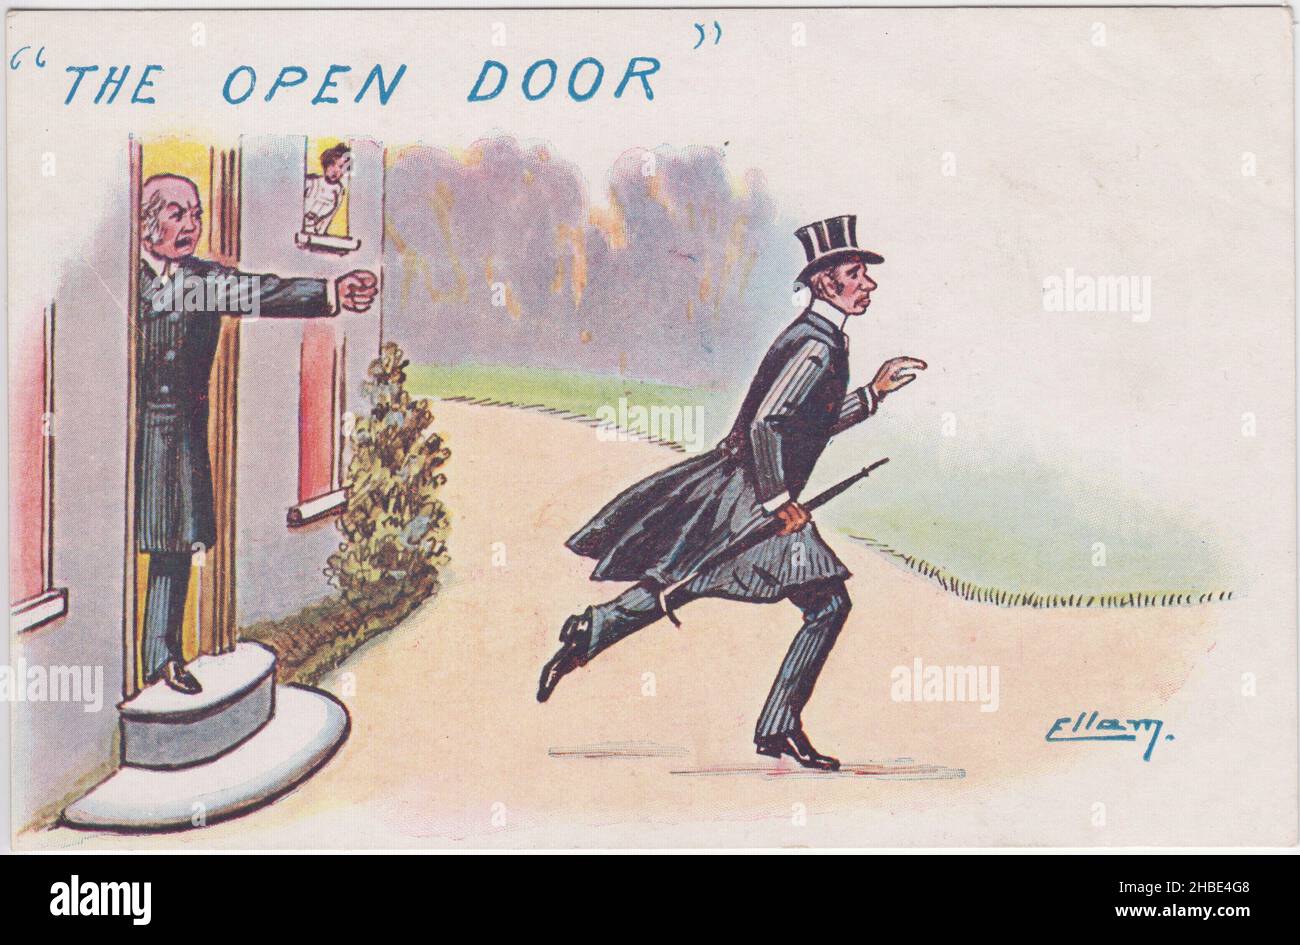 „Die Offene Tür“. Cartoon mit einem elegant gekleideten jungen Mann, der von einem älteren Mann aus einem Haus geworfen wird, zeigt eine Frau, die aus einem Schlafzimmerfenster schaut. Die Postkarte von William Henry Ellam (1858–1935) gehört zu einer Serie, in der er die Debatte über Freihandel gegen Protektionismus/Zollreform im ersten Jahrzehnt des 20.. Jahrhunderts persifliert - "offene Tür" ist ein Verweis auf Freihandel Stockfoto